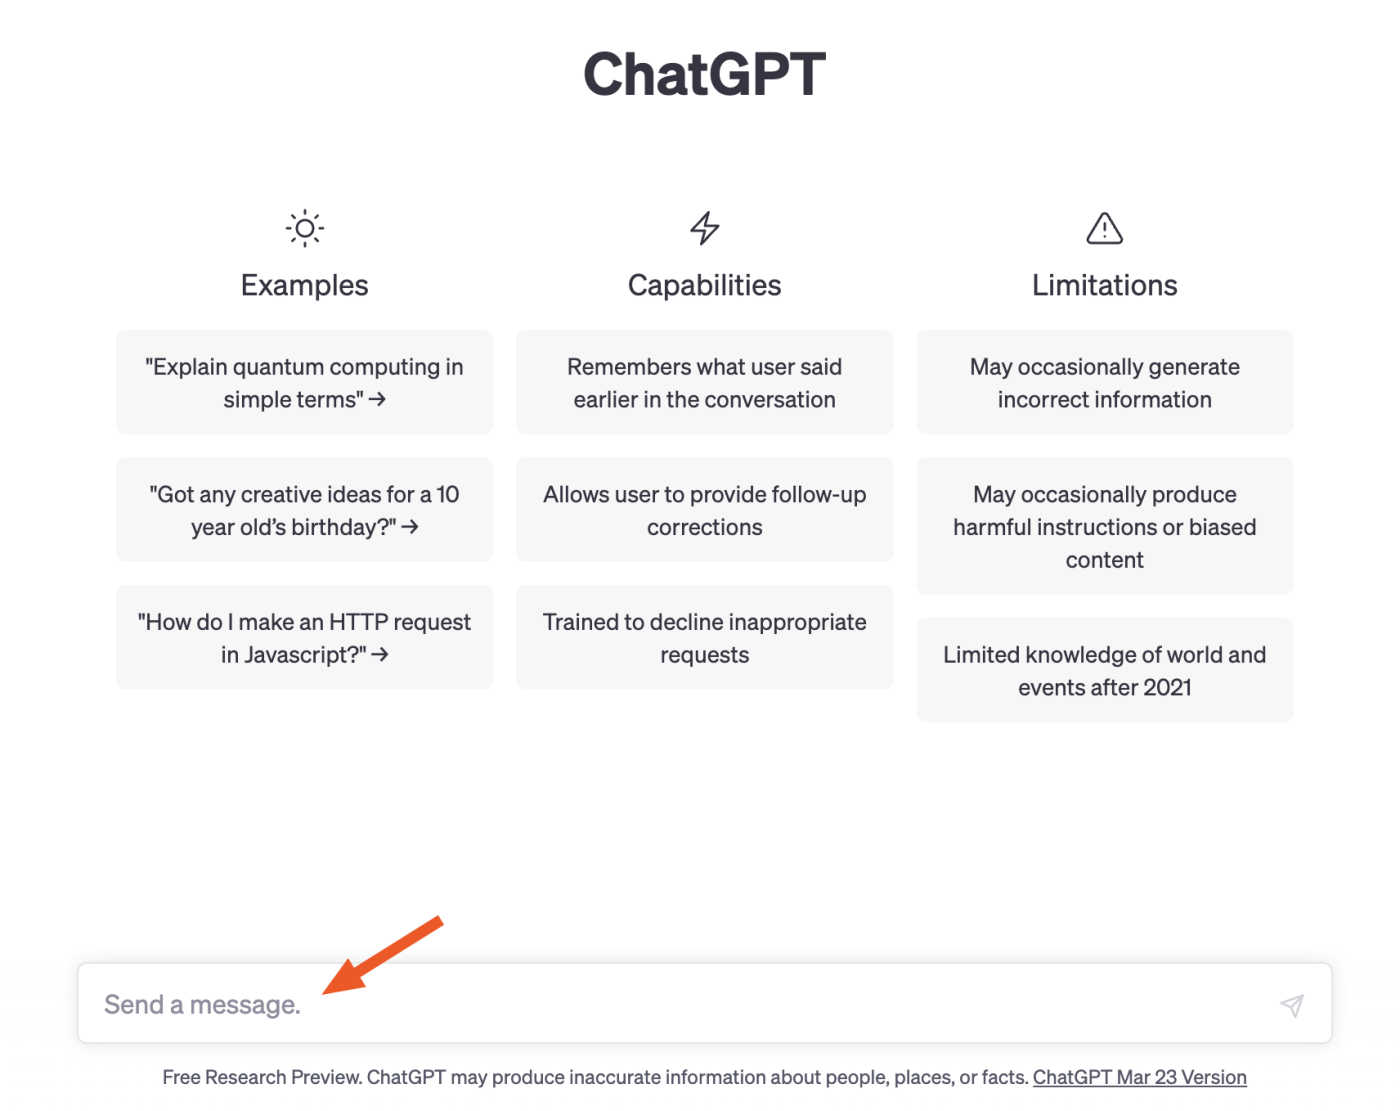 ChatGPT ana sayfasının bir kısmı, sayfanın altındaki mesaj çubuğuna işaret eden bir okla